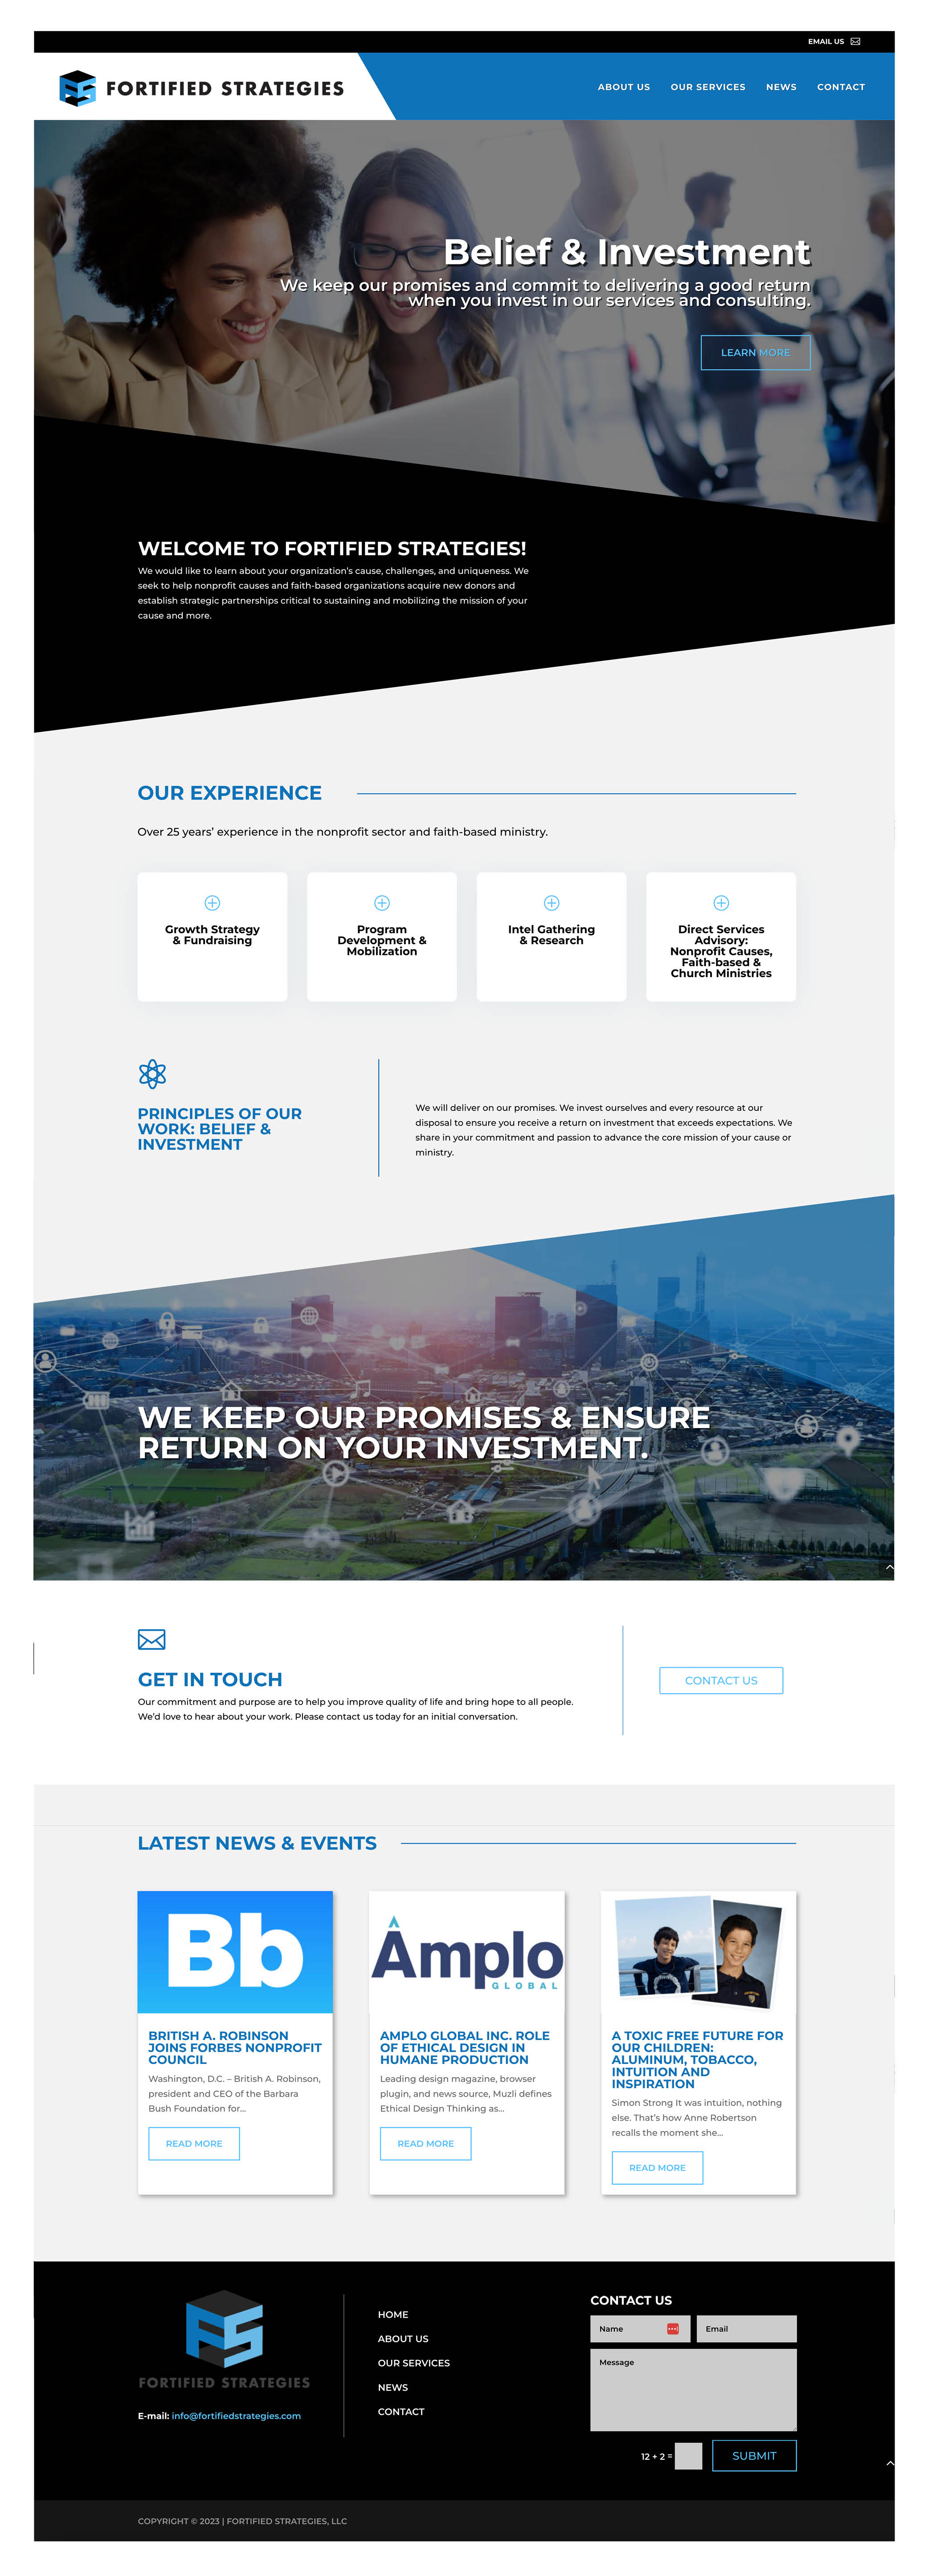 Fortified Strategies Website Homepage Design